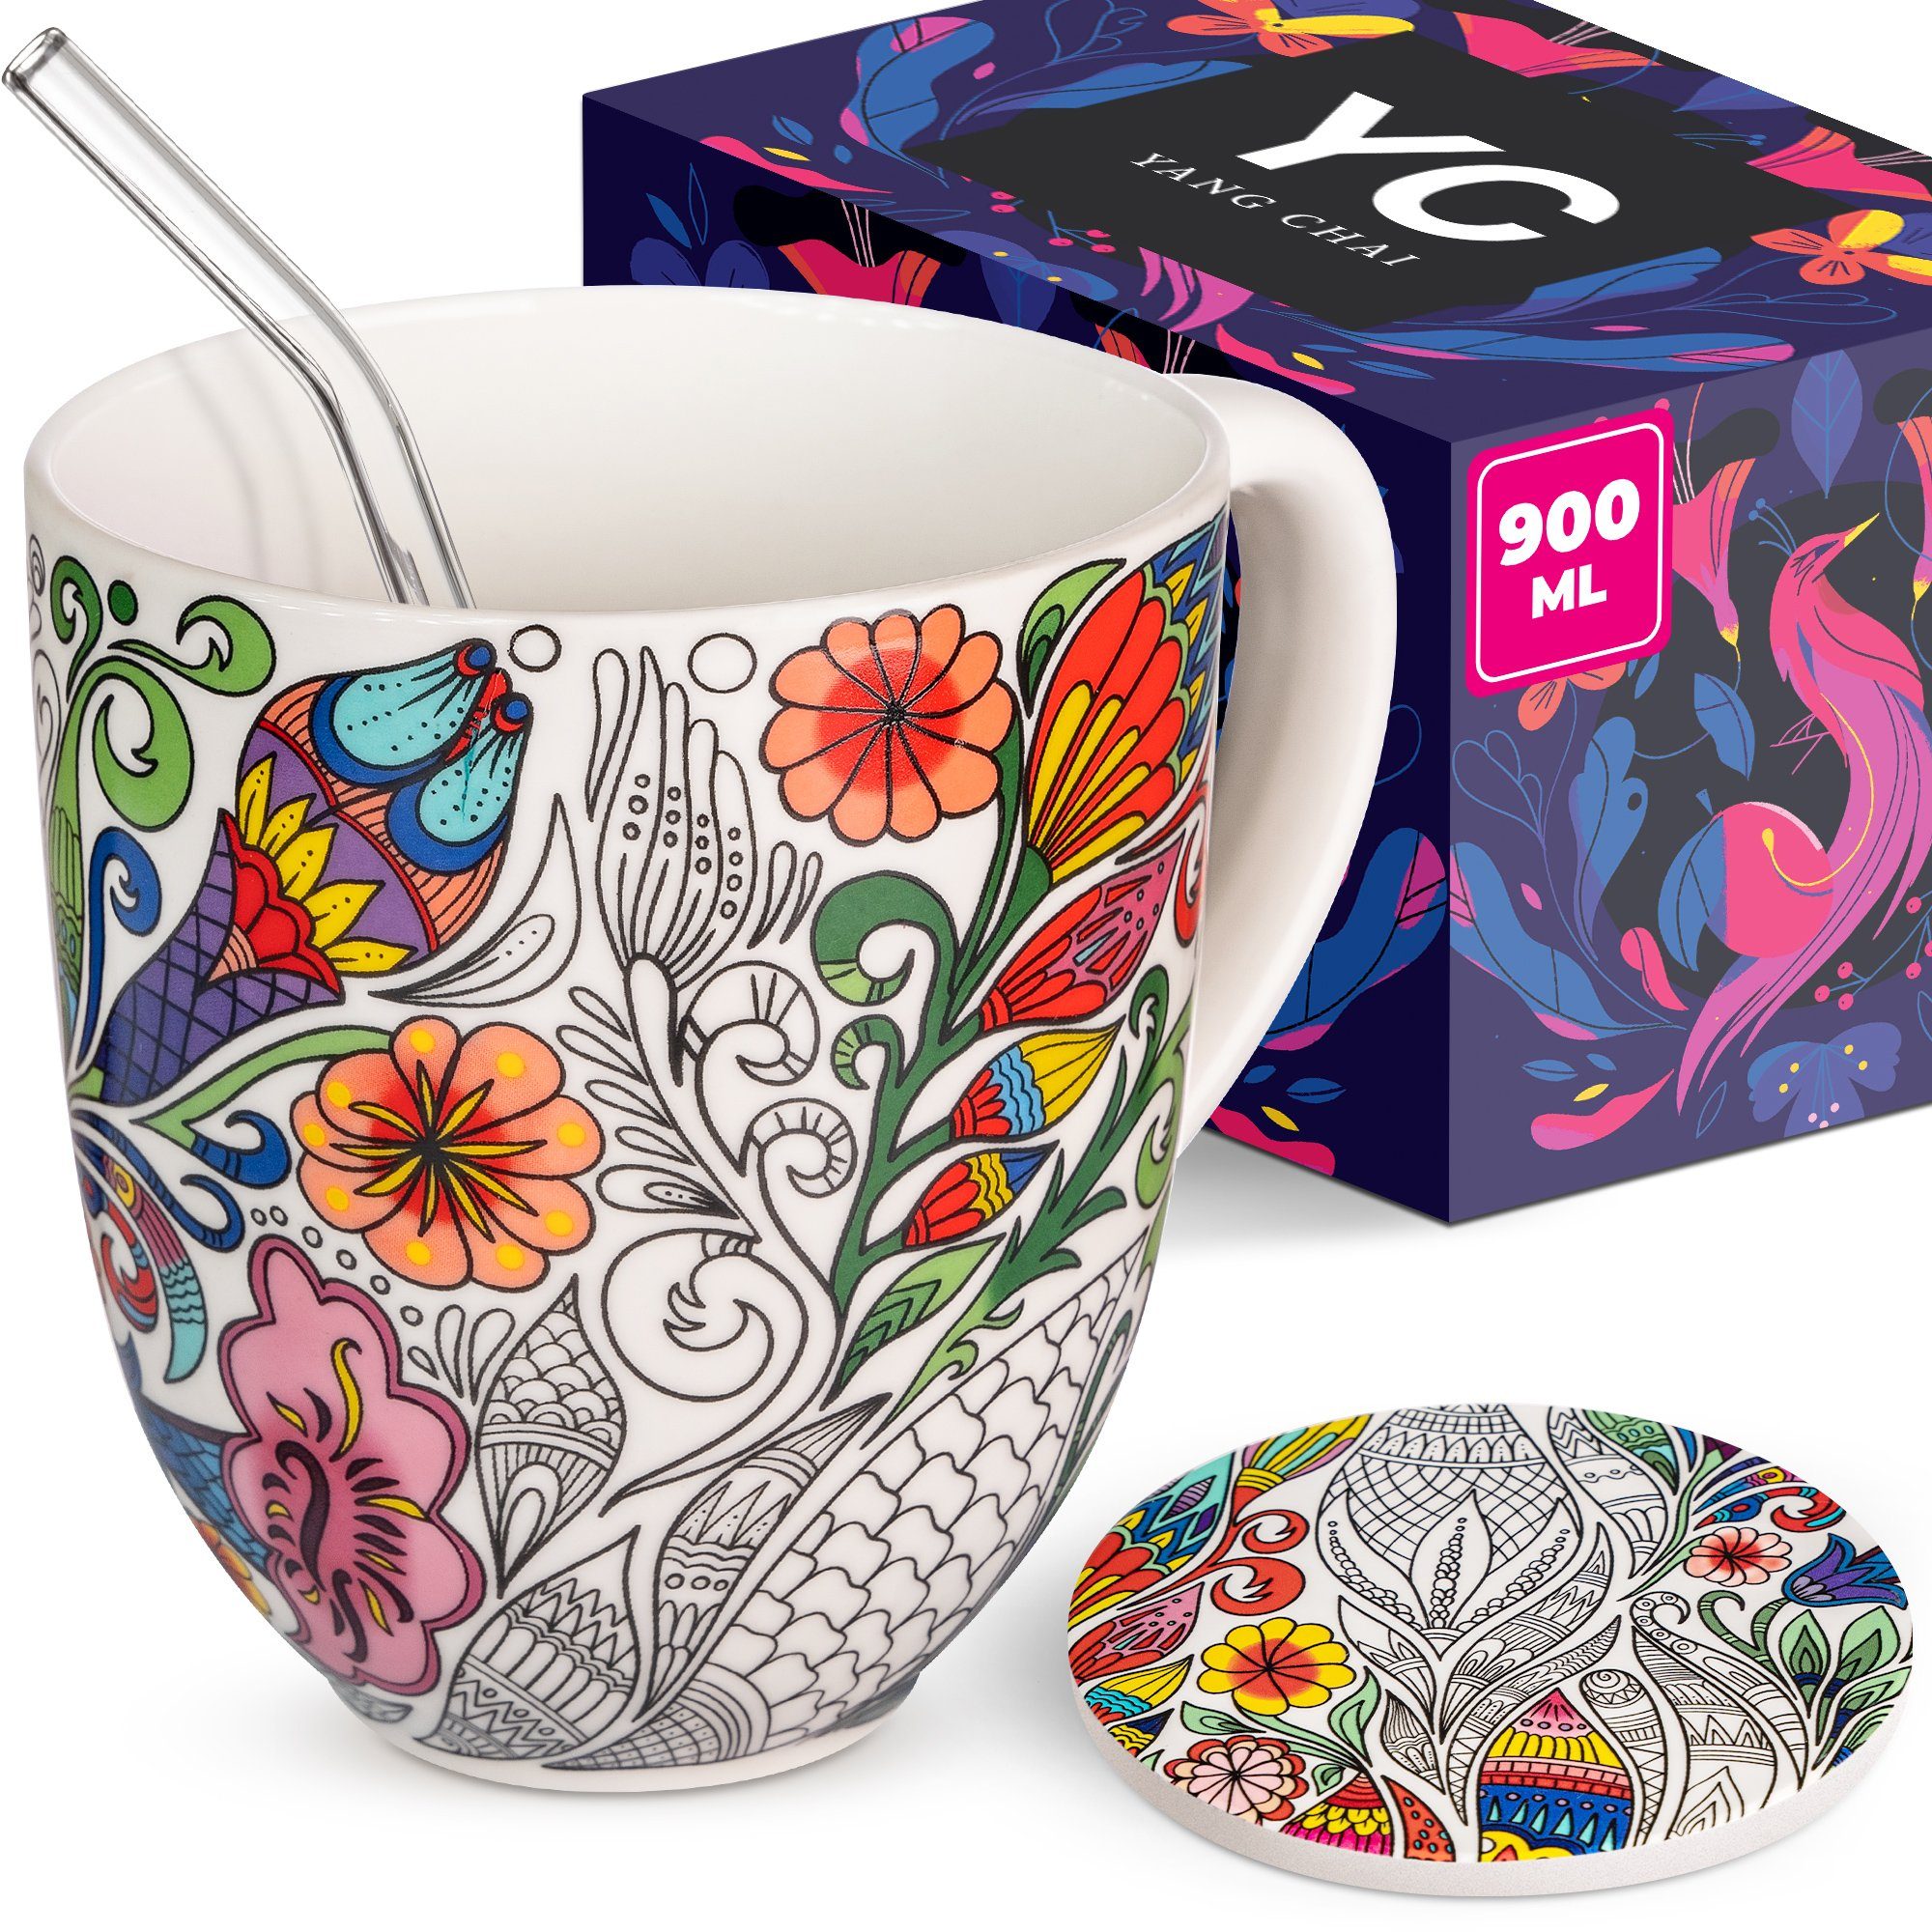 Yang Chai Tasse XXL Teetasse, Große Jumbotasse mit 900ml Fassungsvermögen (Nature), Porzellan, 4-teiliges hochwertiges Teeset mit Blüten Ornament